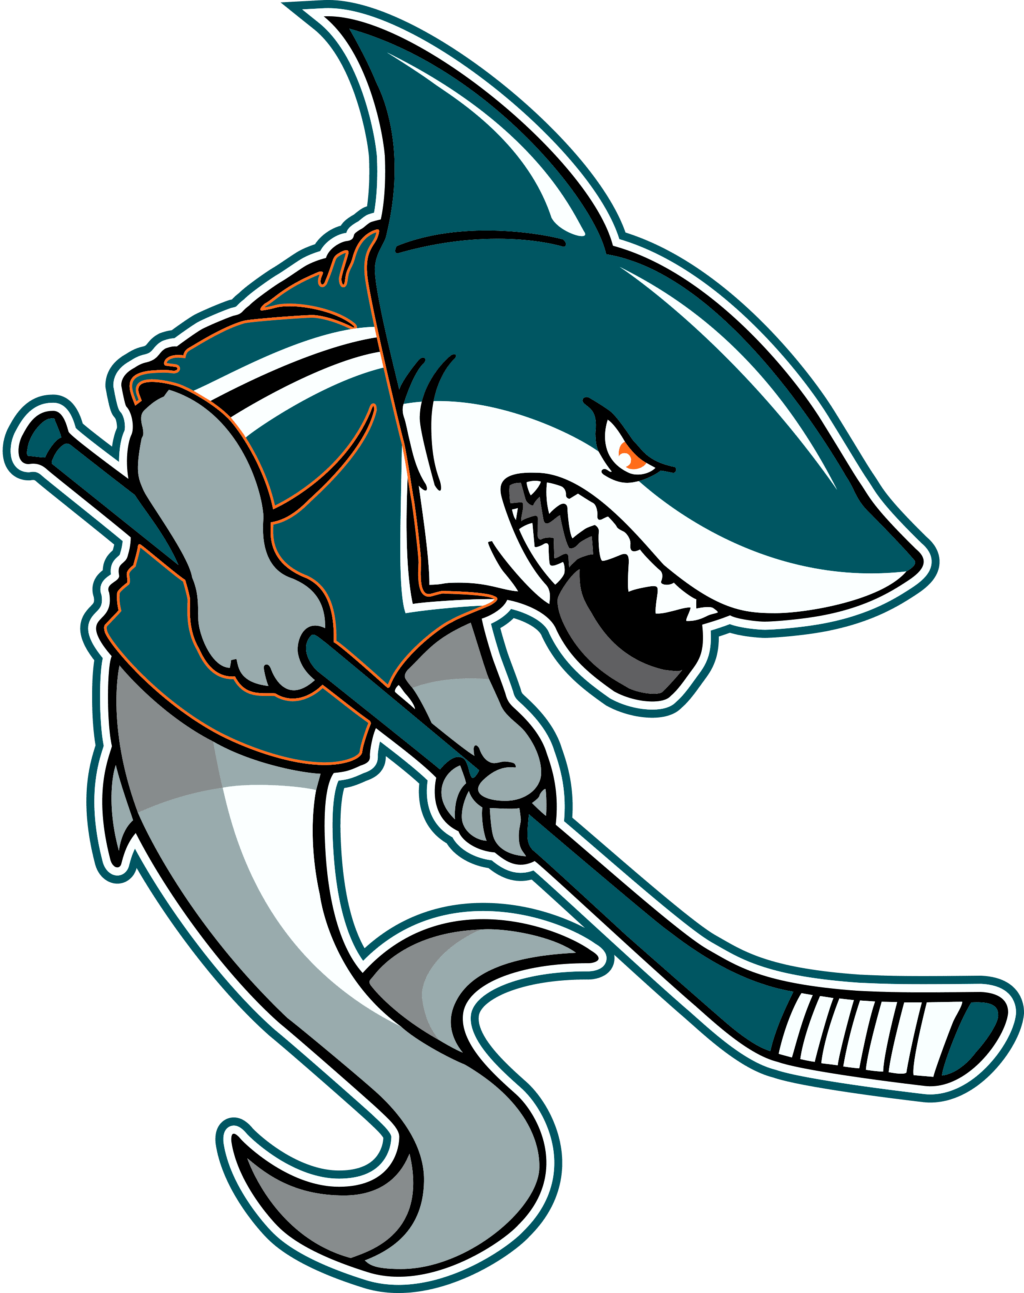 sjs 07 NHL San Jose Sharks SVG, SVG Files For Silhouette, San Jose Sharks Files For Cricut, San Jose Sharks SVG, DXF, EPS, PNG Instant Download. San Jose Sharks SVG, SVG Files For Silhouette, San Jose Sharks Files For Cricut, San Jose Sharks SVG, DXF, EPS, PNG Instant Download.